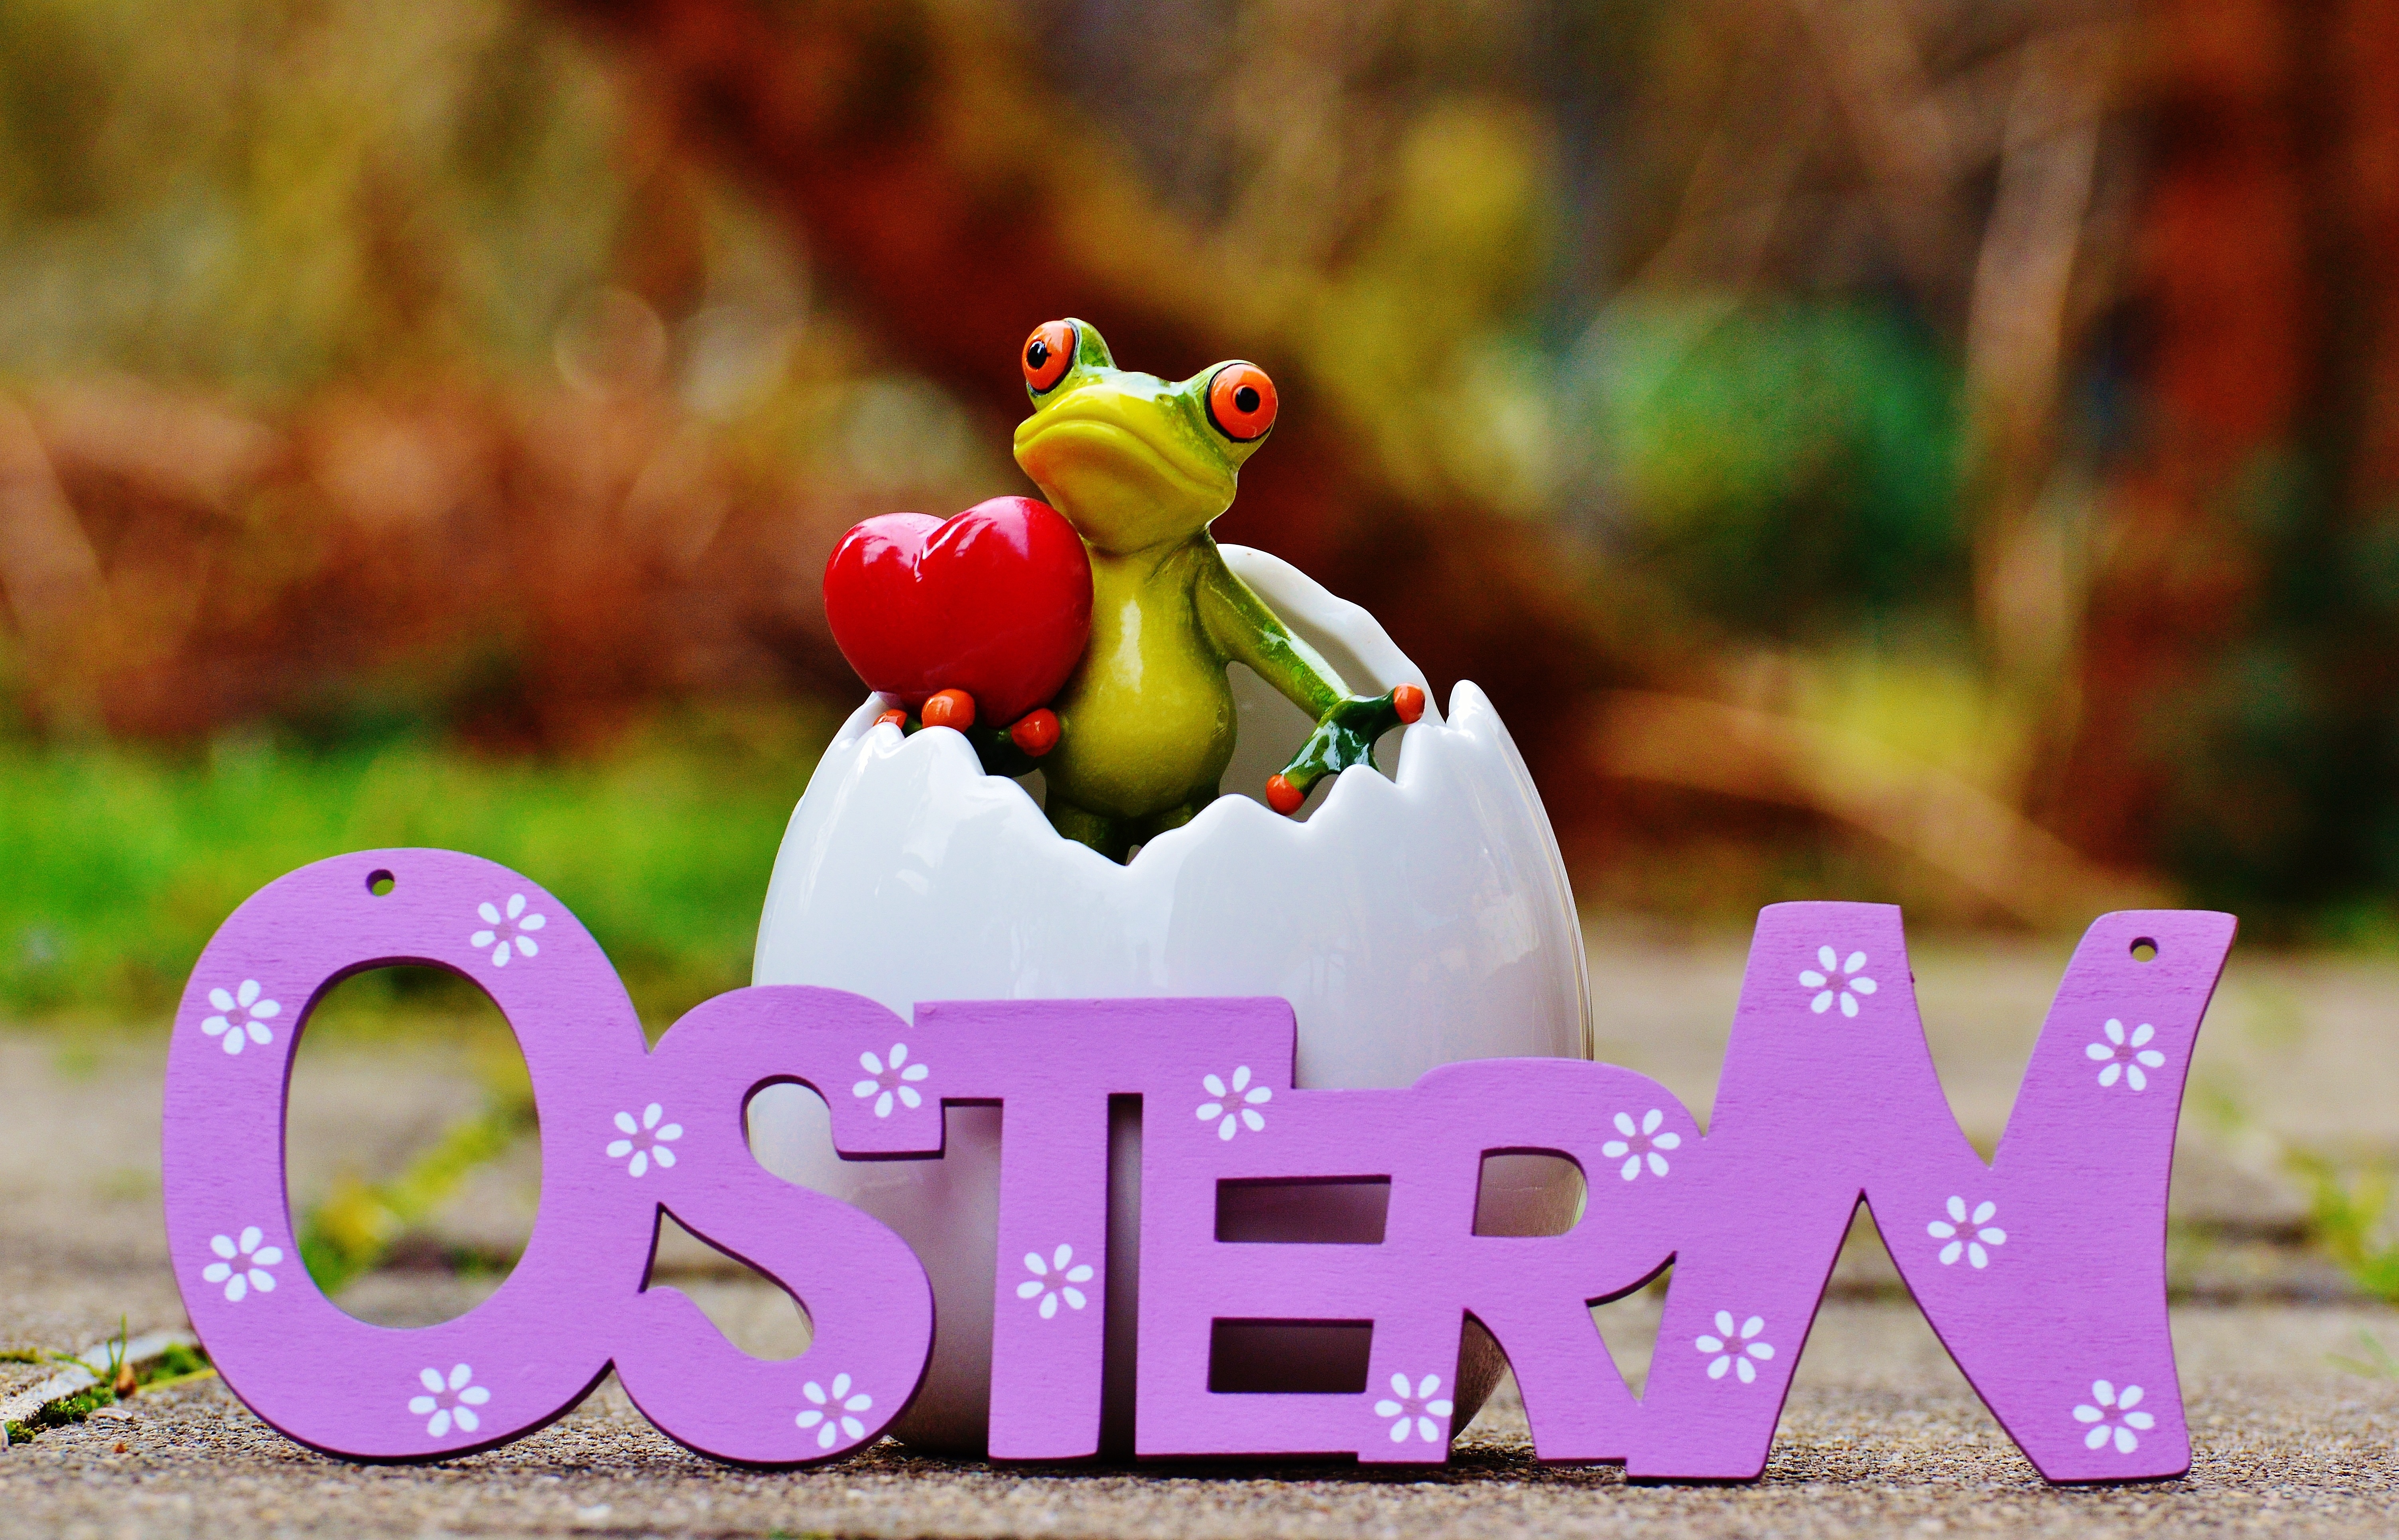 tree frog on eggshell ostern freestanding letter